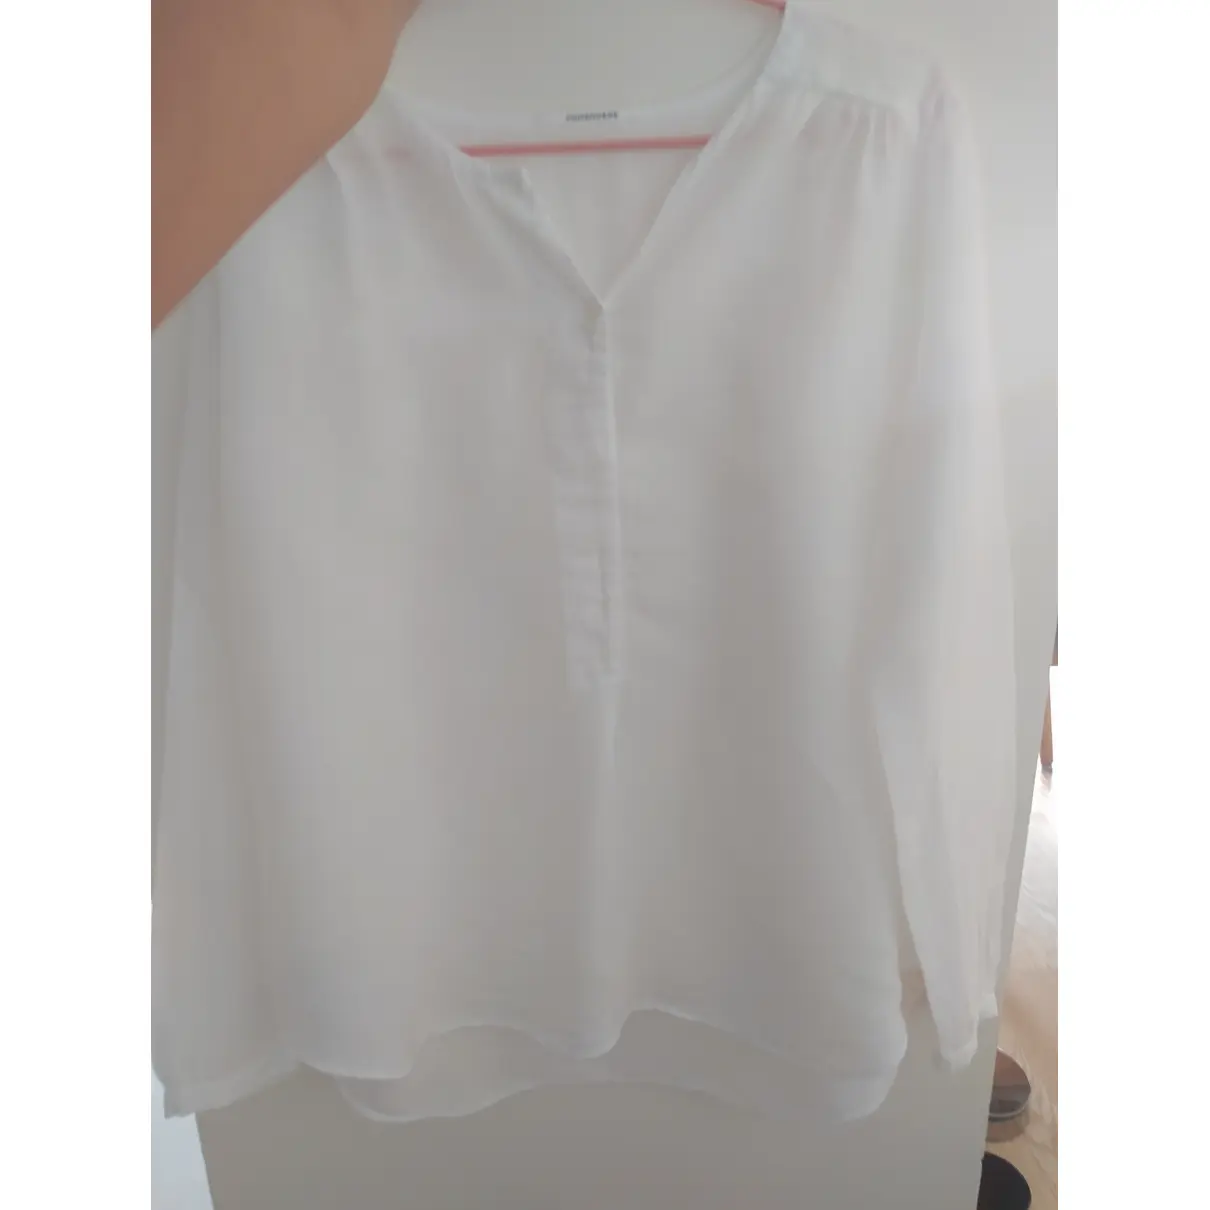 Linen blouse Pomandère